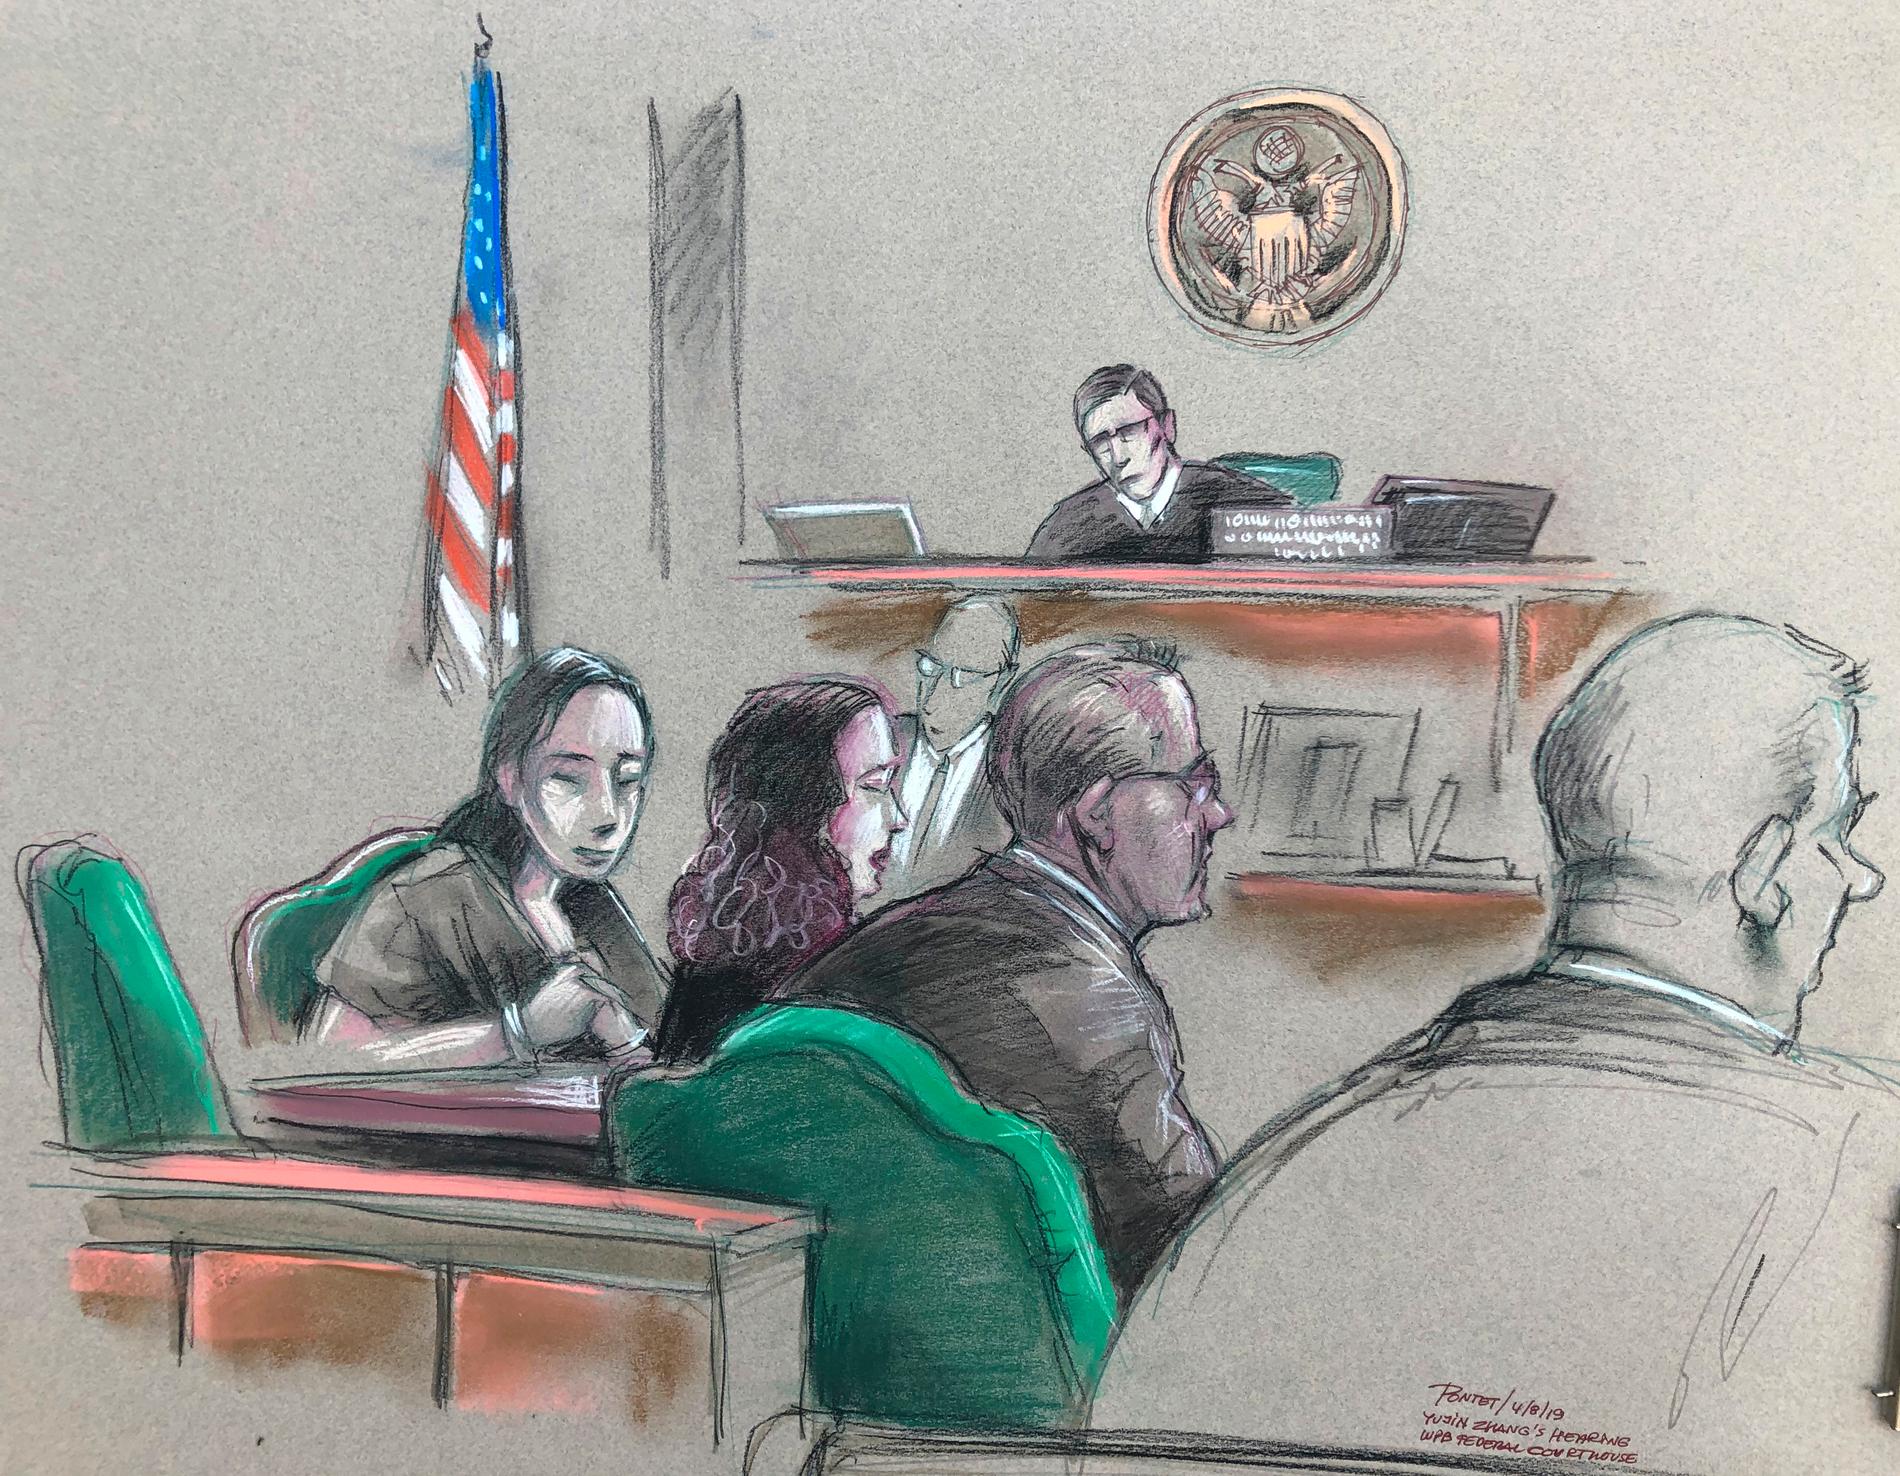 En teckning av den kinesiska kvinnan i rätten den 8 april. Hon ska enligt Secret Service bland annat ha burit ett usb-minne med en skadlig kod som var "utöver det vanliga".